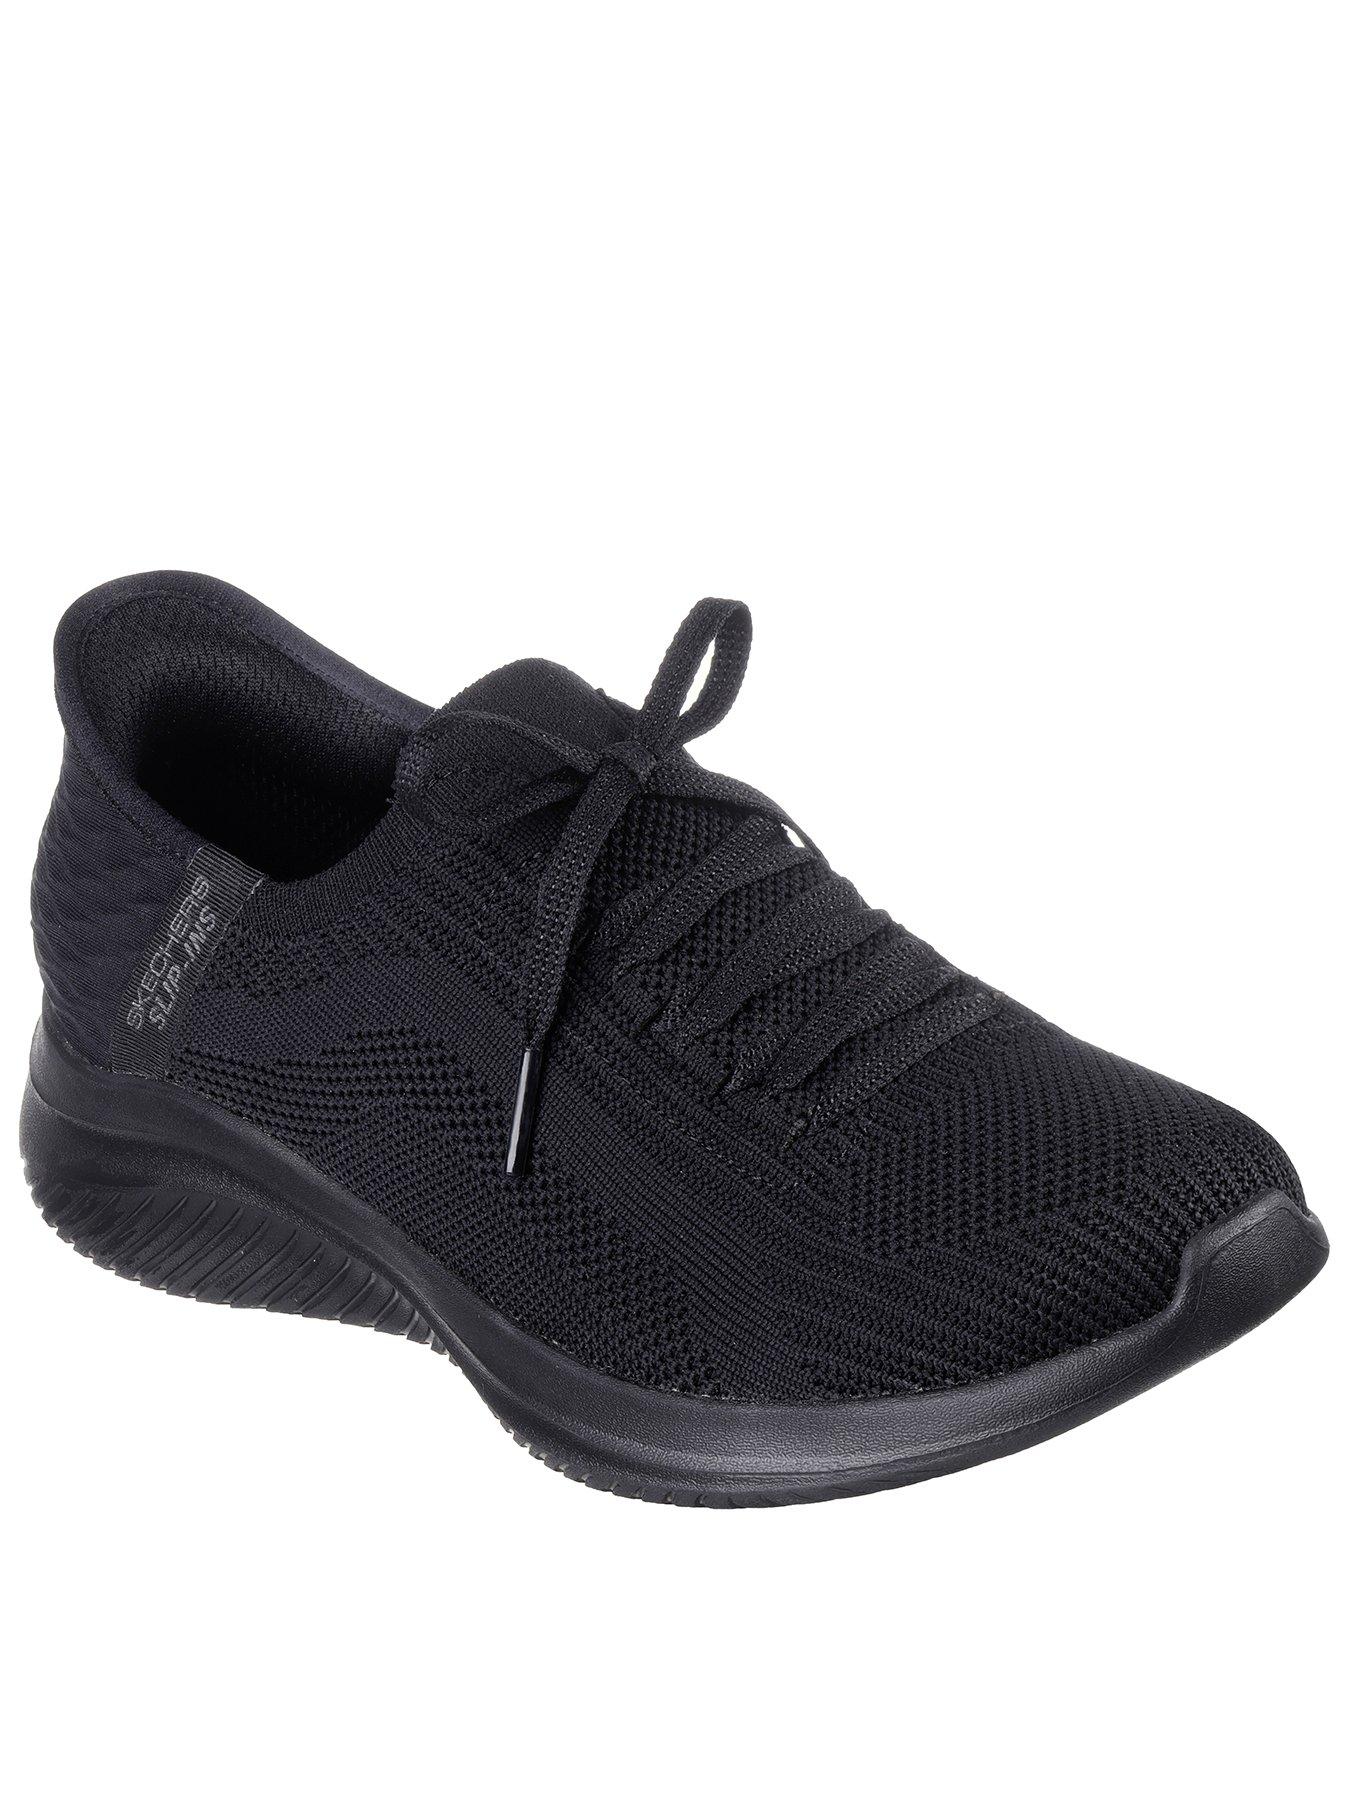 Skechers Legging Goflex Hw blue - ESD Store fashion, footwear and